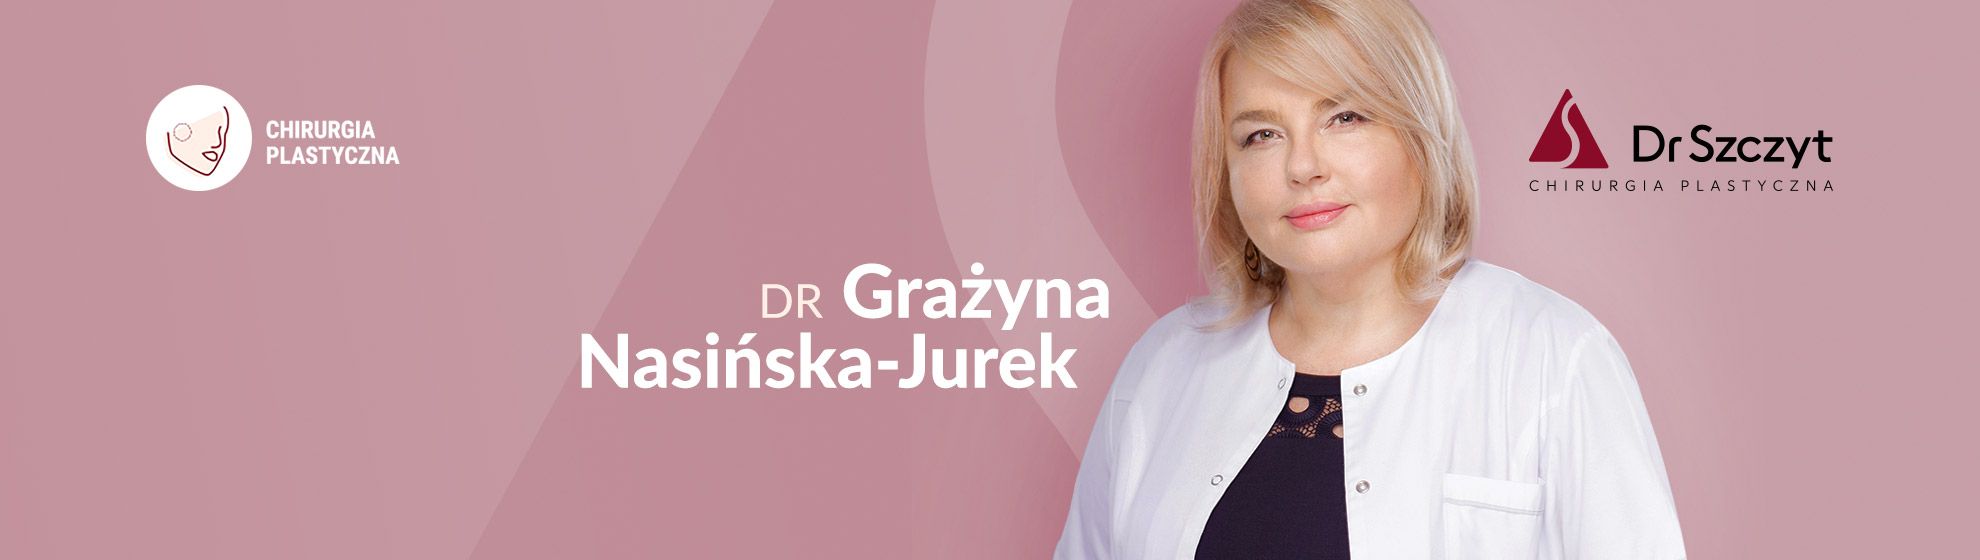 Dr Grażyna Nasińska-Jurek